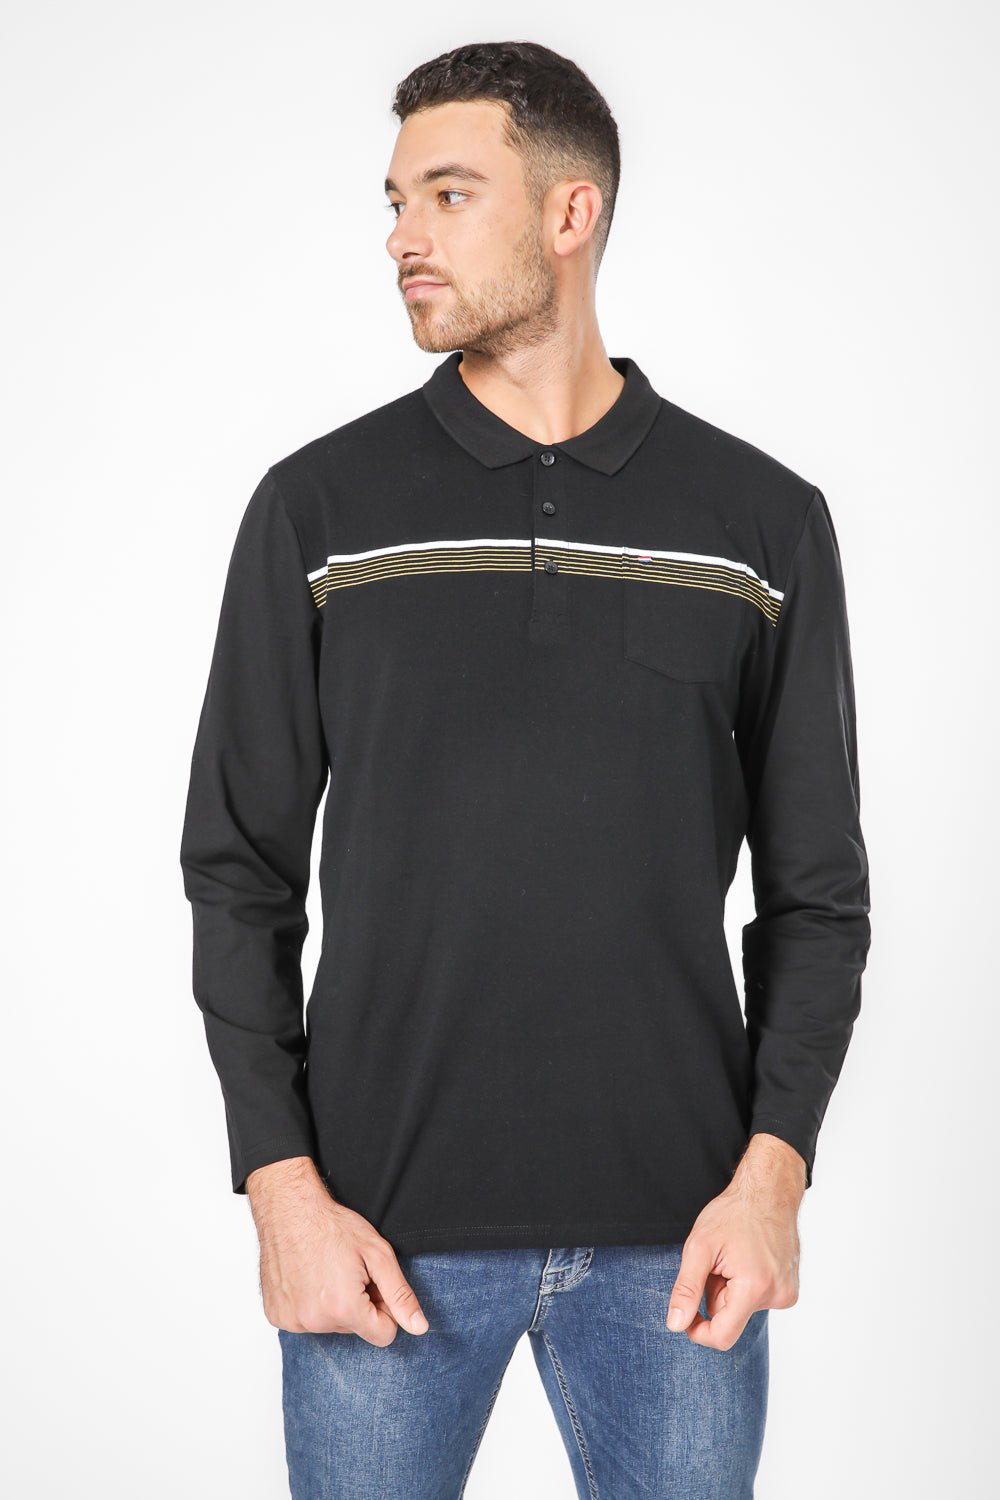 SCORCHER - חולצת פולו ארוכה בצבע שחור - MASHBIR//365